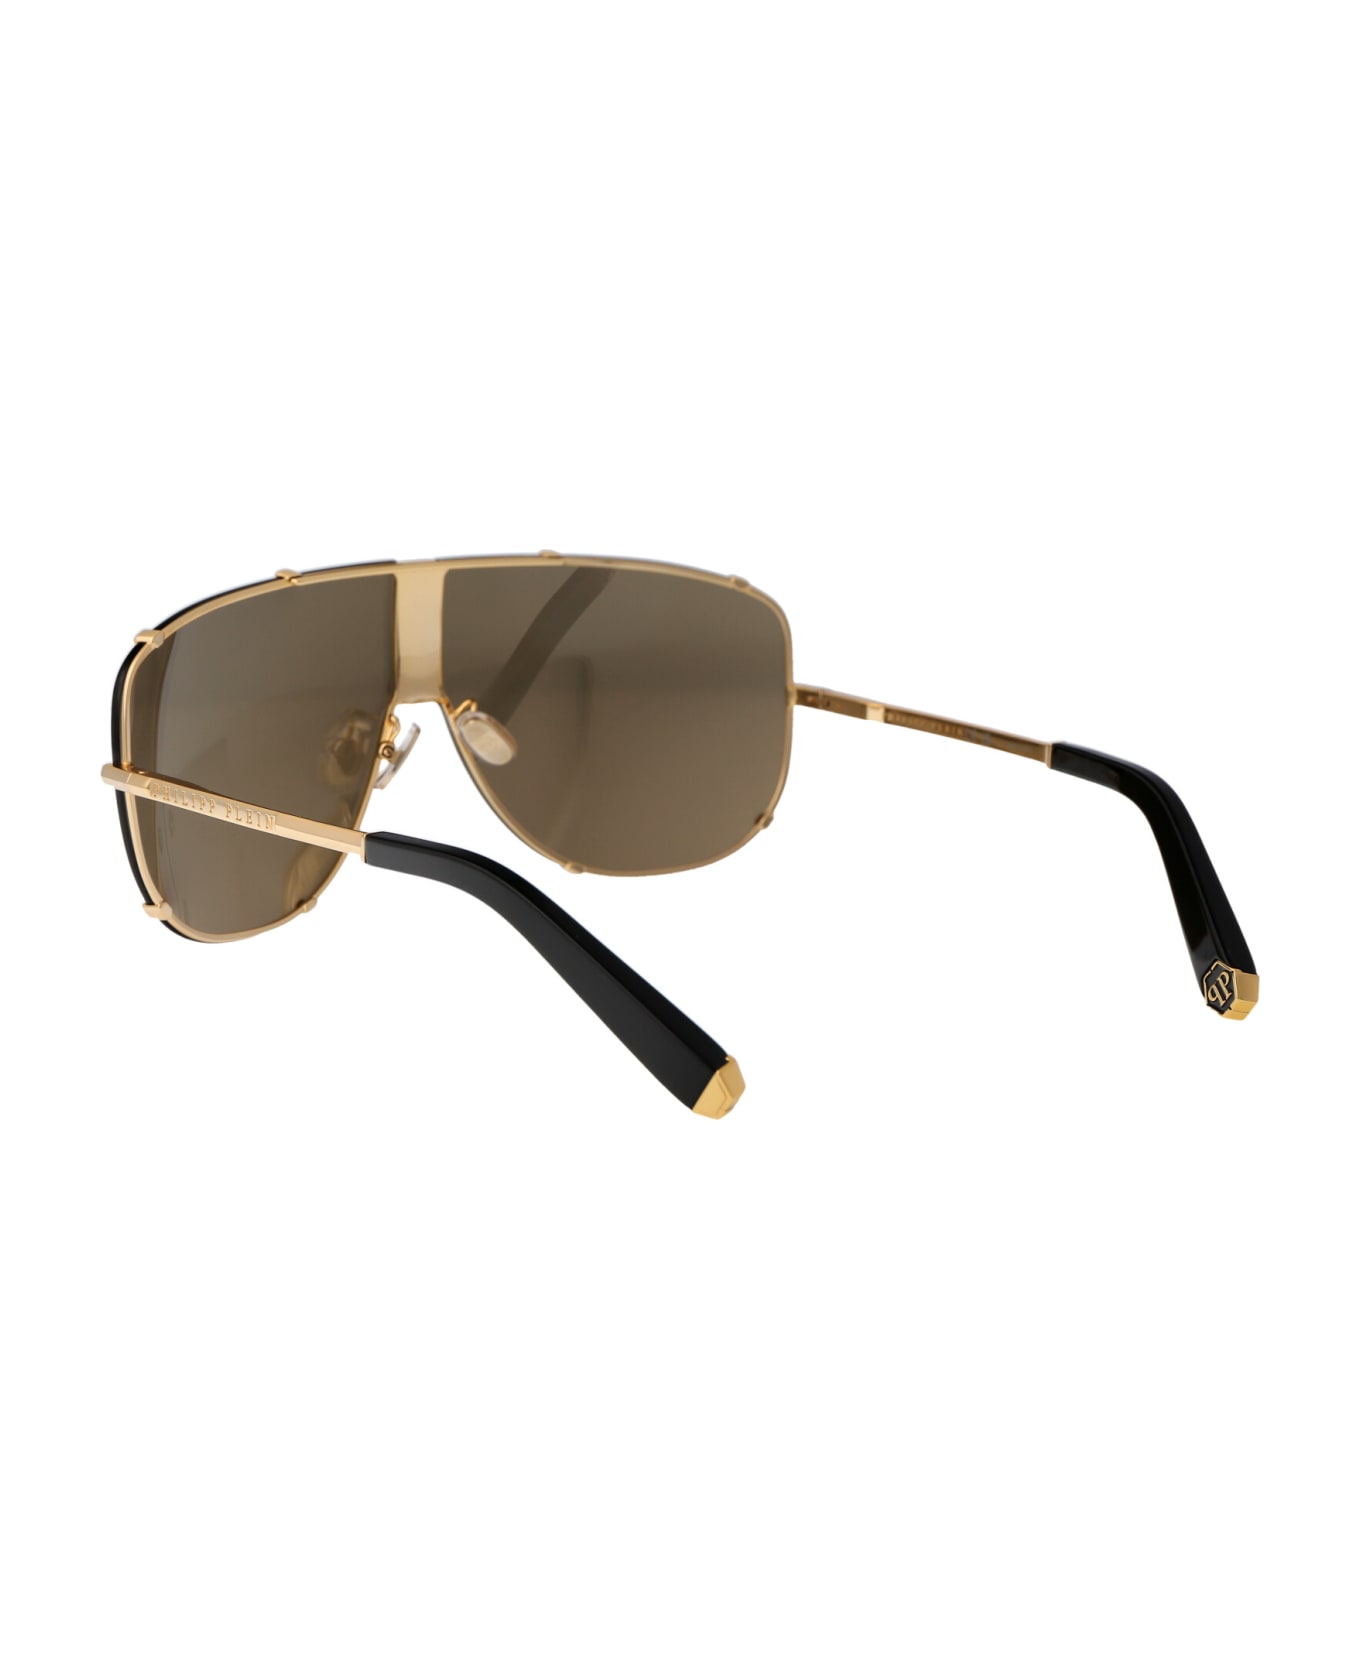 Philipp Plein Spp075m Sunglasses - 400G GOLD